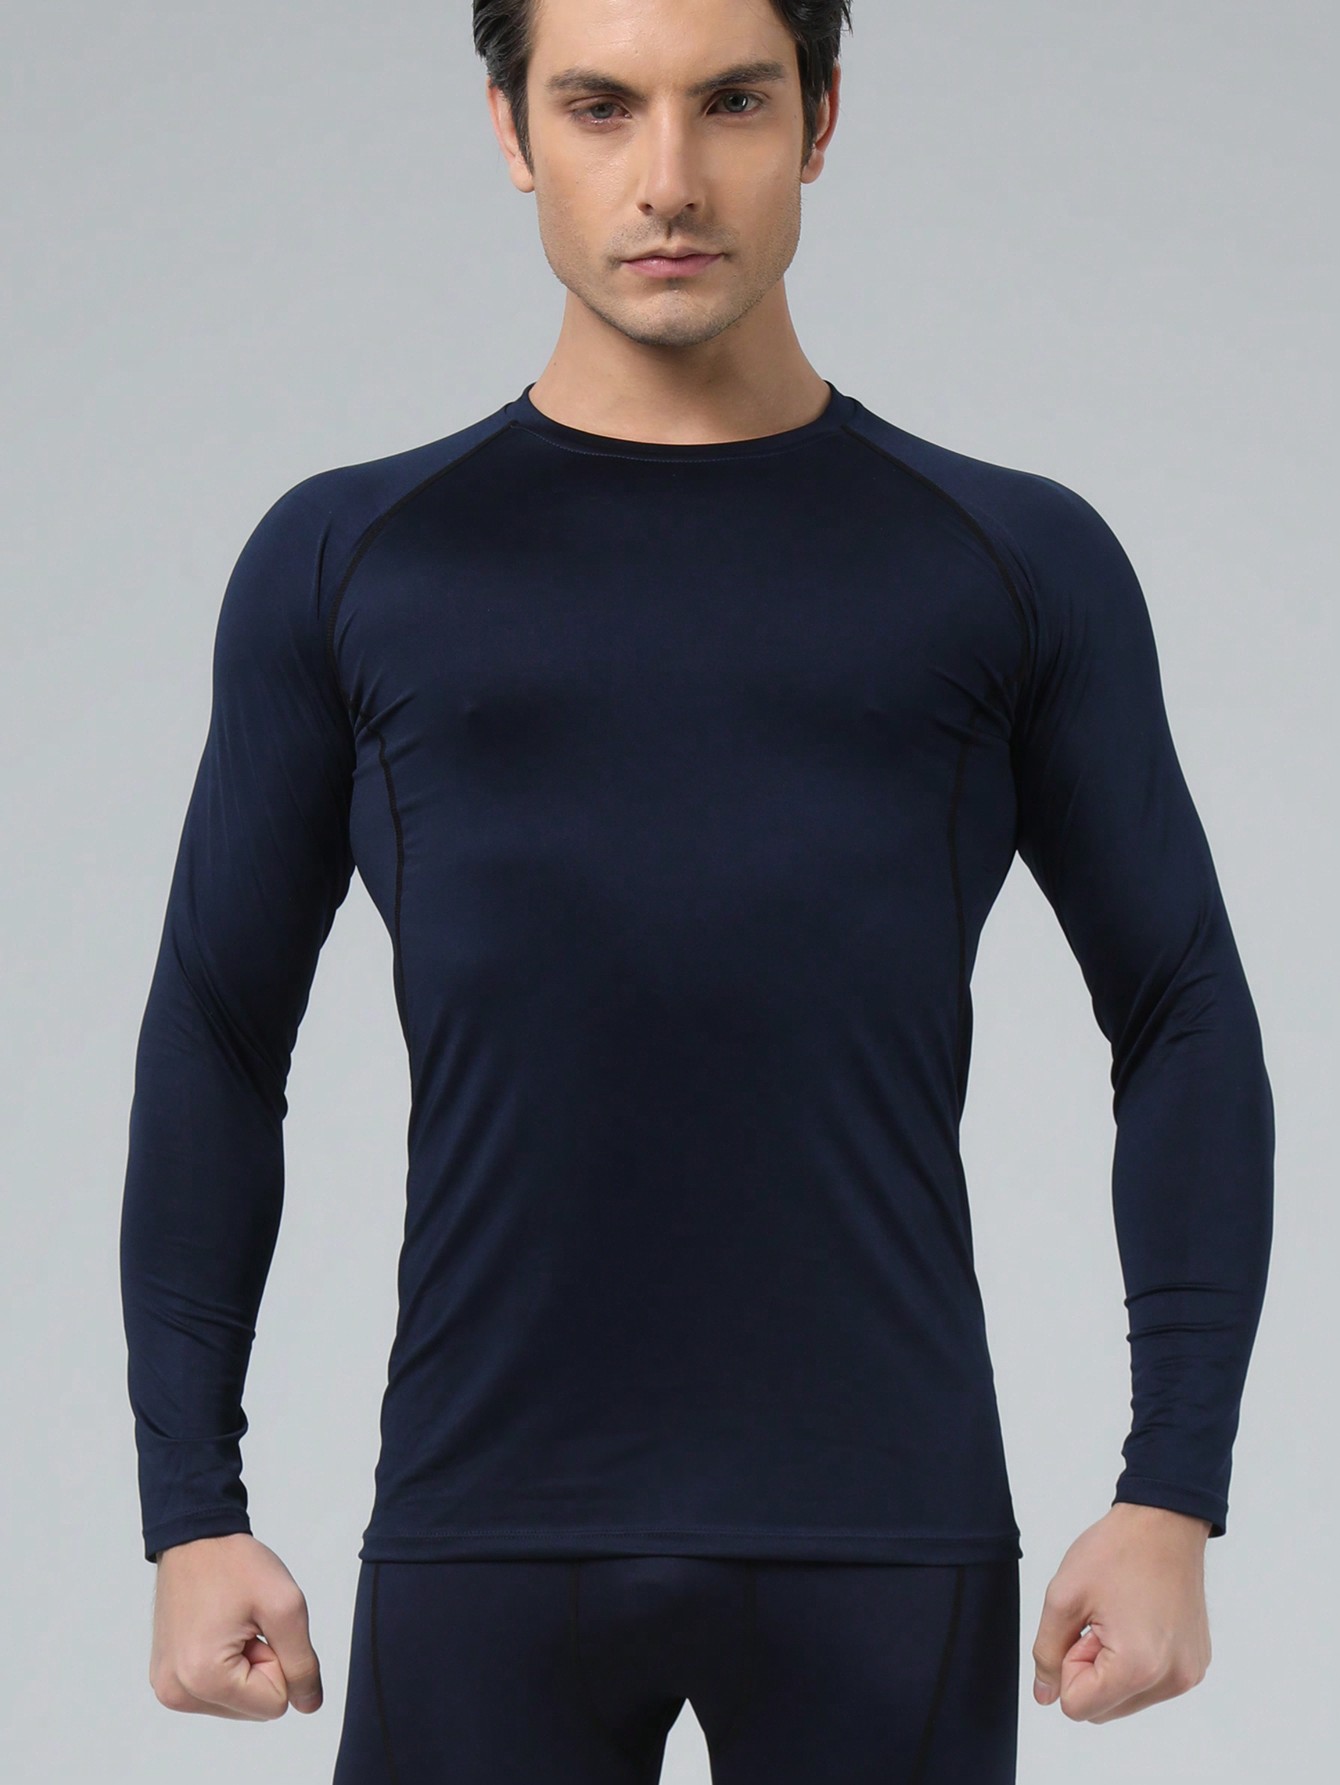 Мужская эластичная компрессионная рубашка для фитнеса с длинными рукавами, темно-синий летняя женская быстросохнущая дышащая футболка для йоги с короткими рукавами спортивные колготки тонкая сексуальная одежда для фитнеса и